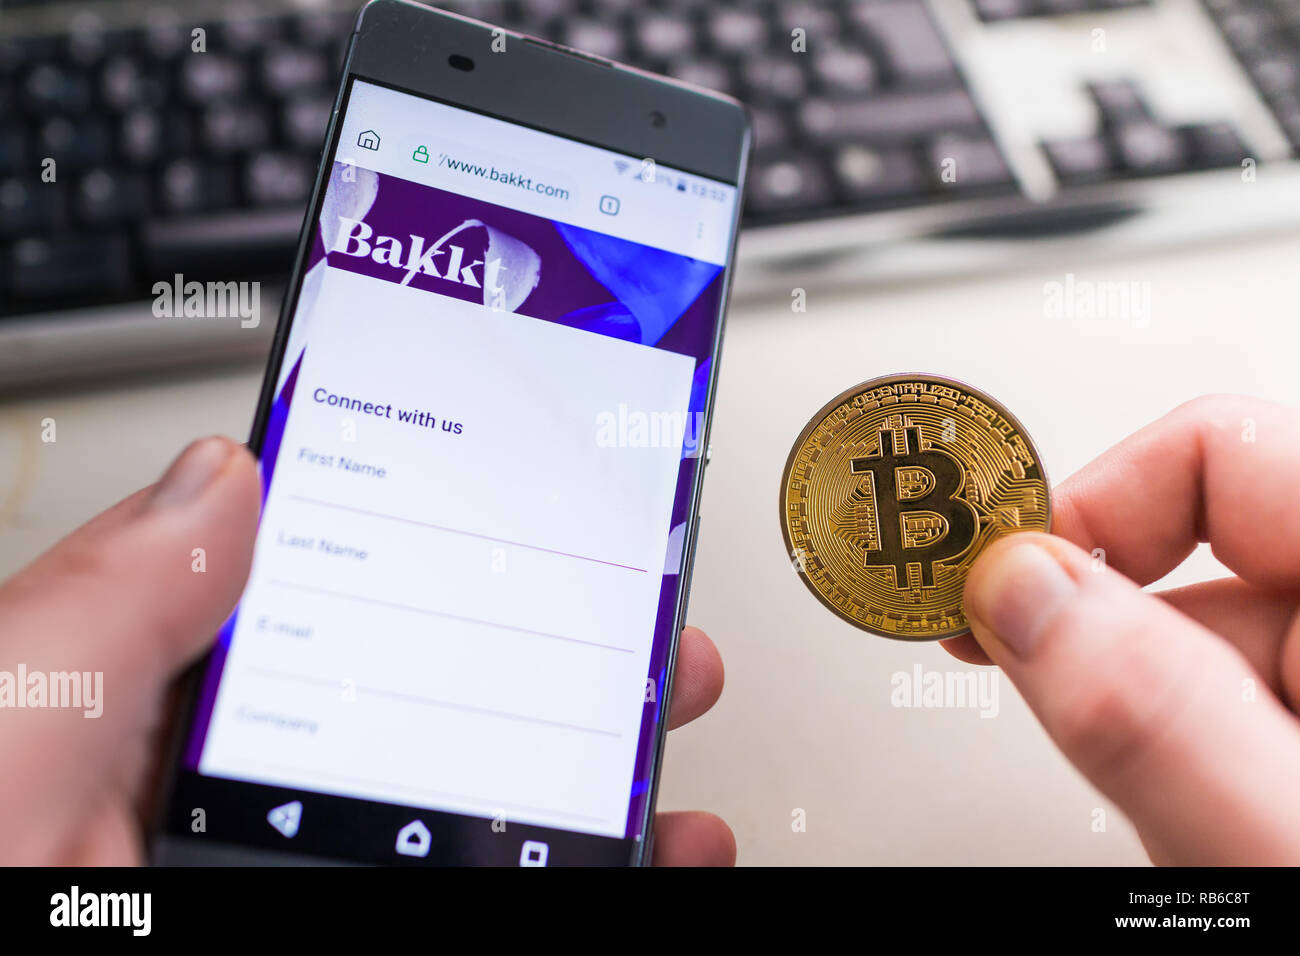 SLOVENIA - Gennaio 8, 2019: uomo azienda Bitcoin monete e in altra parte smartphone con aperto Bakkt sito web. Foto Stock